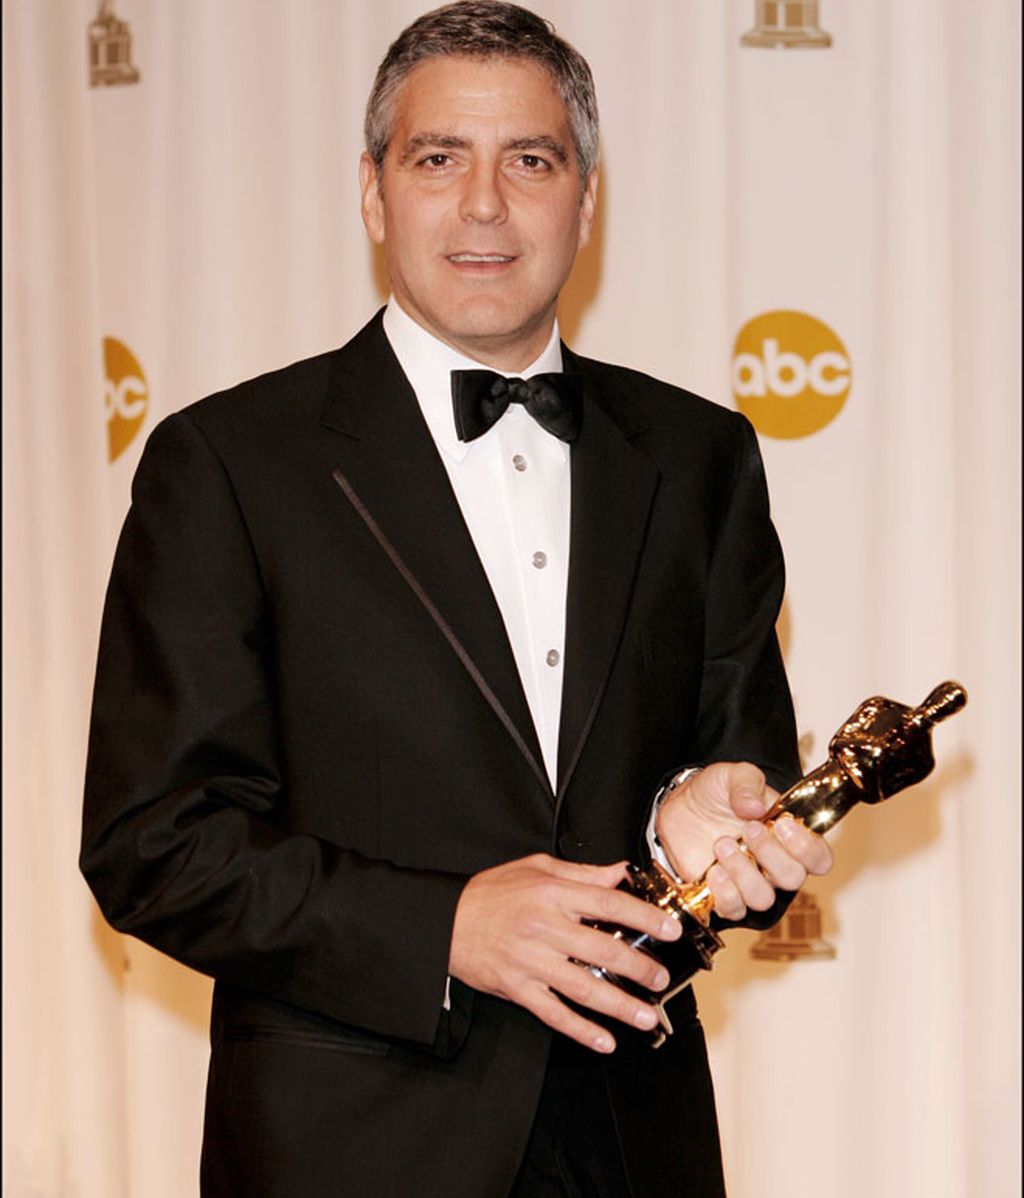 Los envidiados 50 años de Clooney